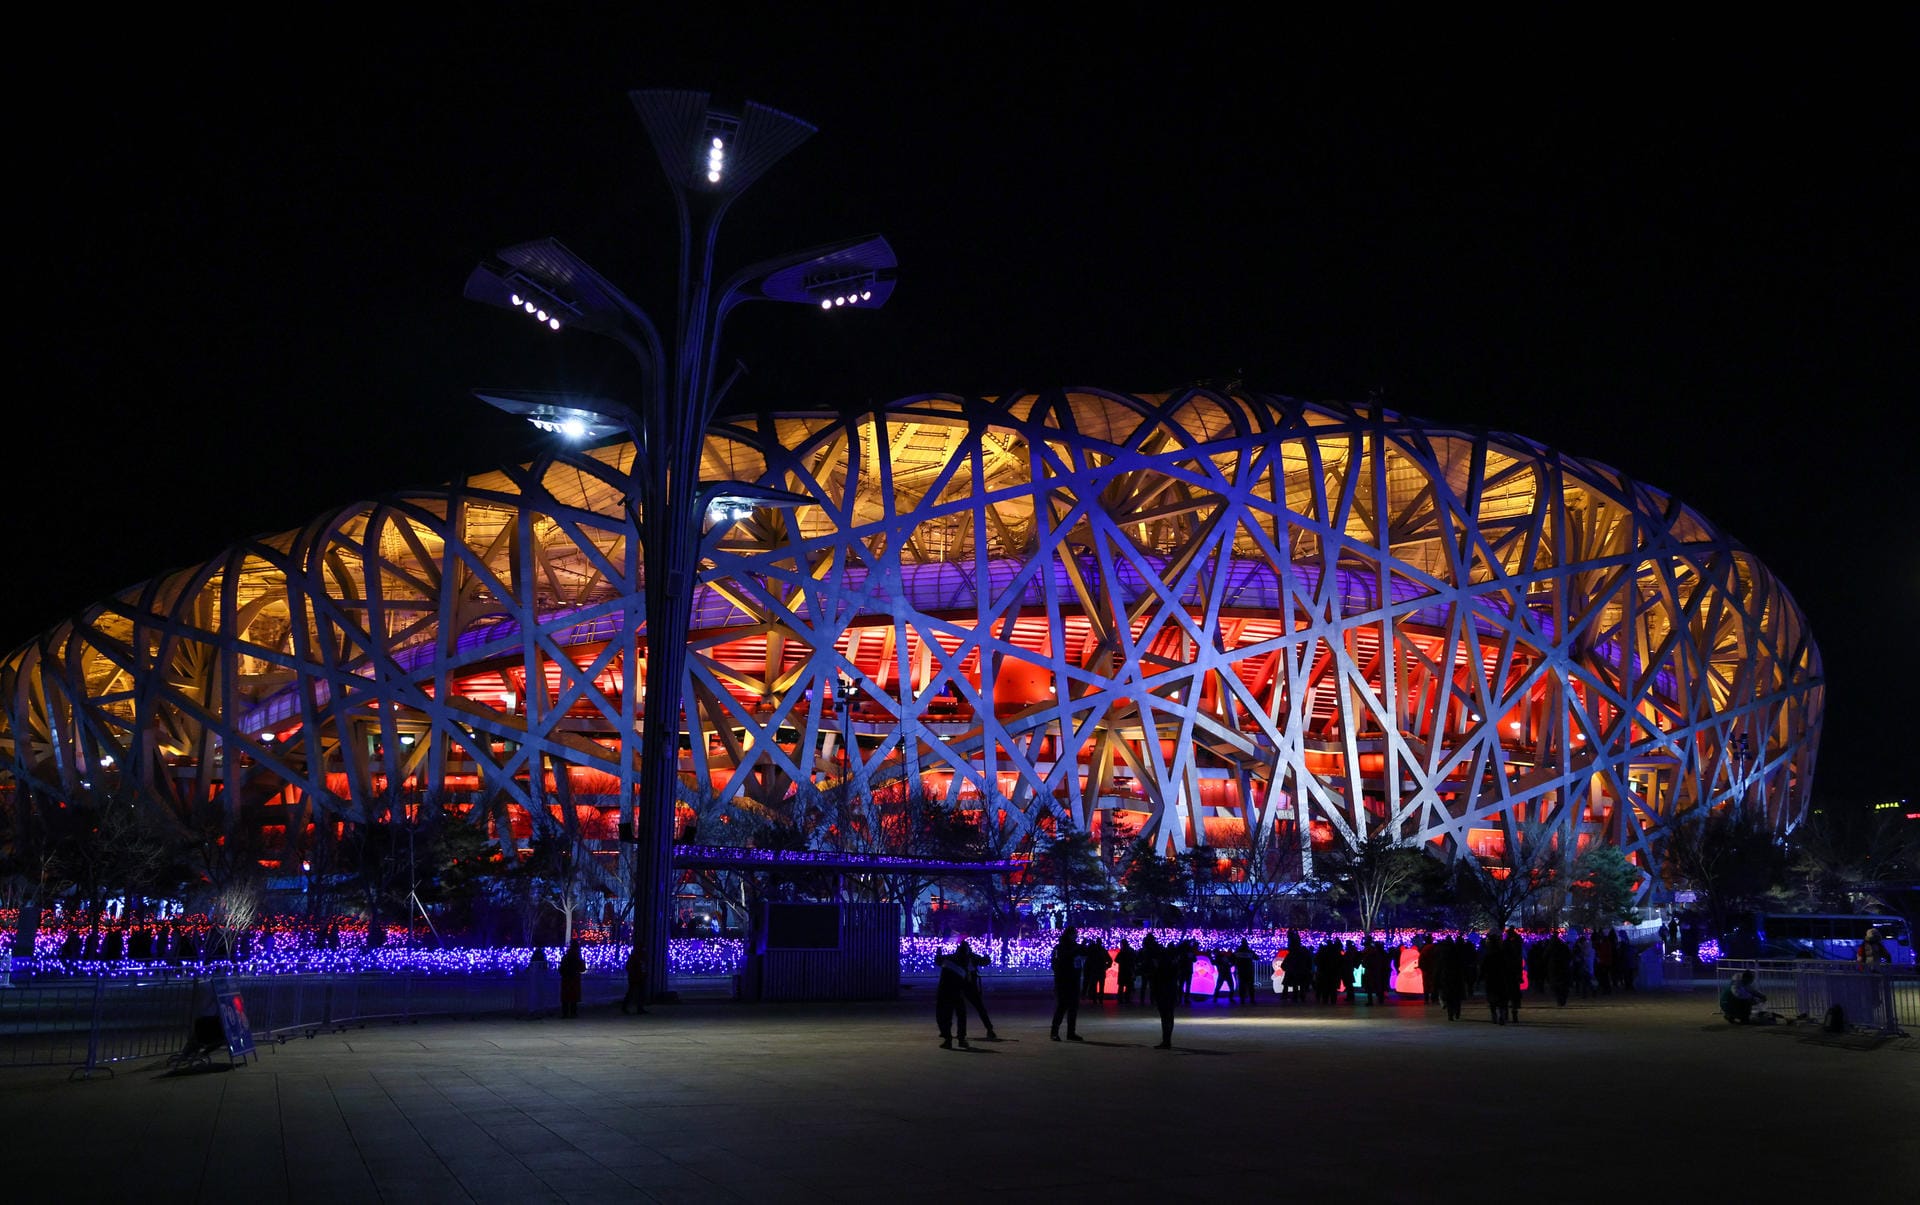 Das Nationalstadion von außen: Es wird auch das "Vogelnest" genannt und erstrahlt in warmen Farben während dieser Eröffnungsfeier.